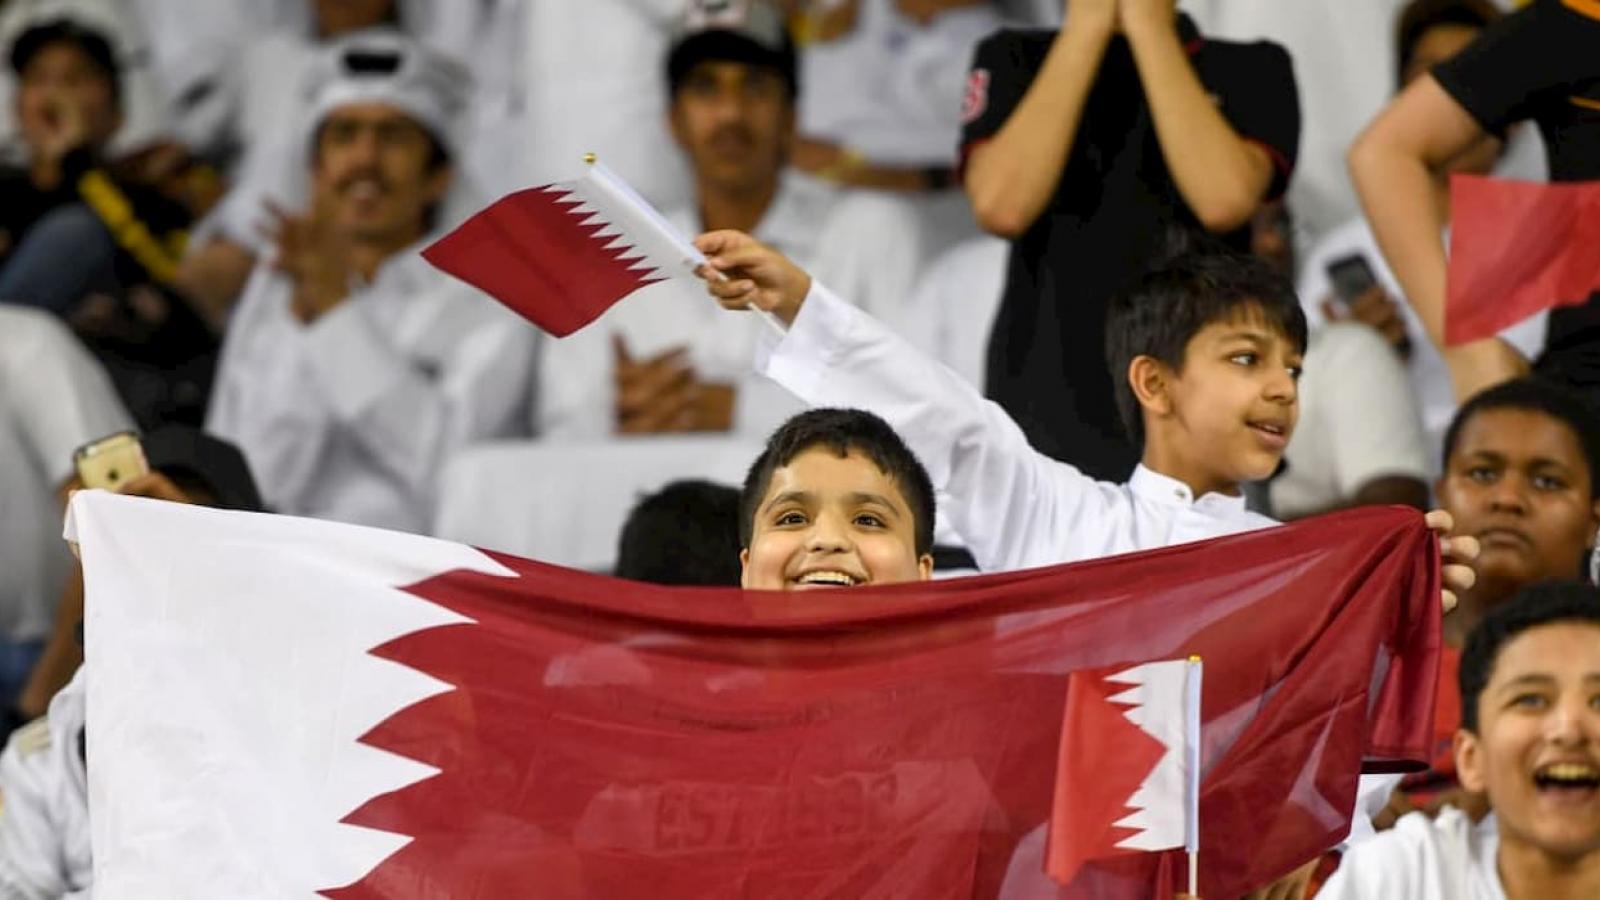 Qatar Football Fans